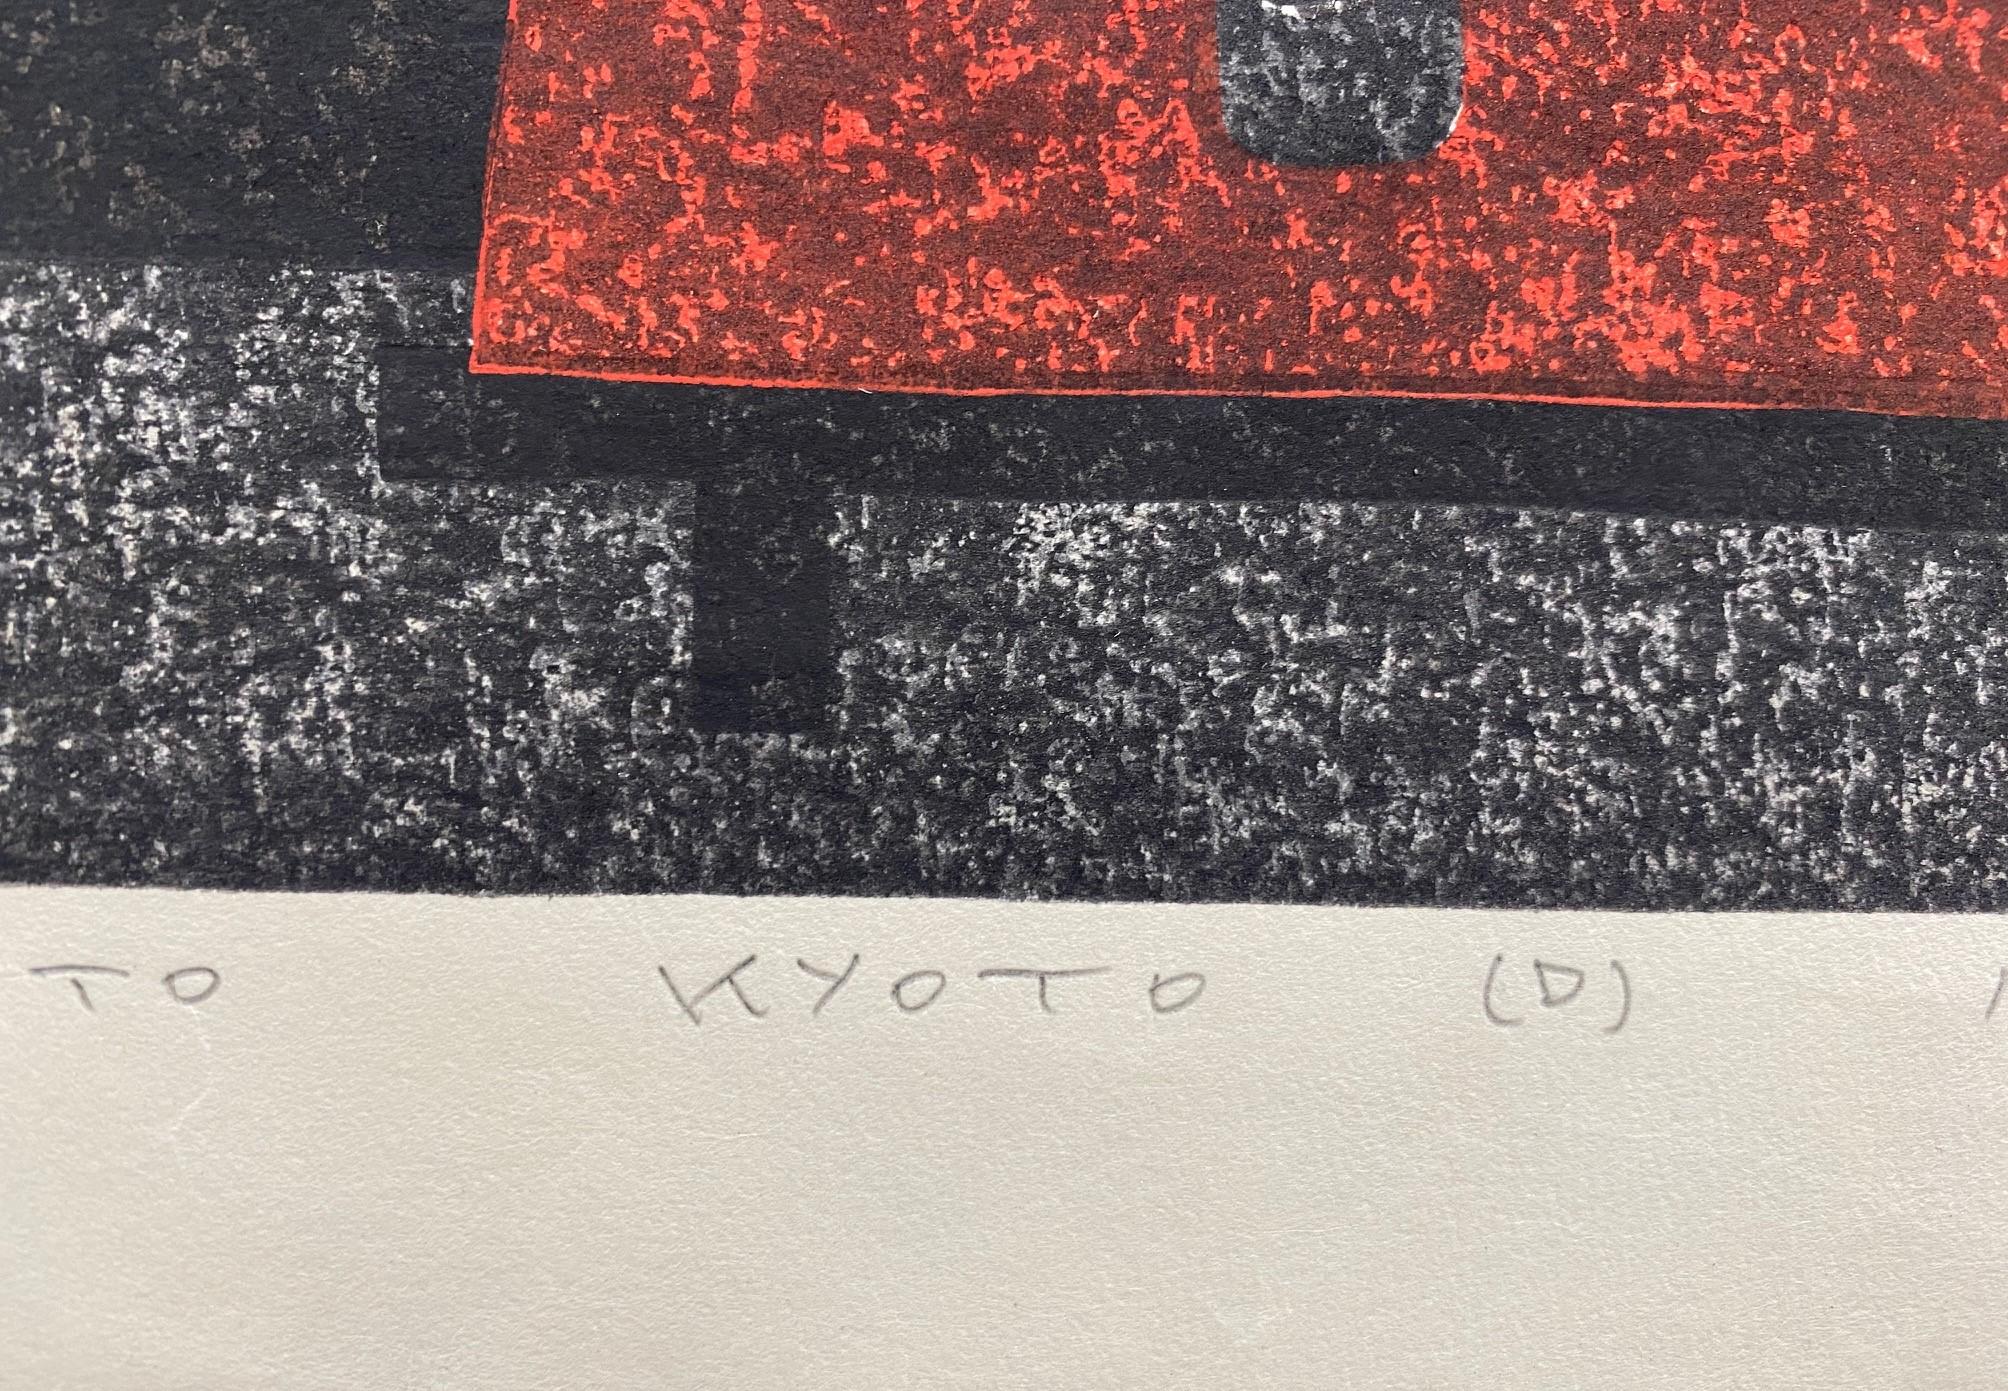 Kiyoshi Saito - Édition limitée de la gravure sur bois japonaise Toriemoto Kyoto D signée en vente 3